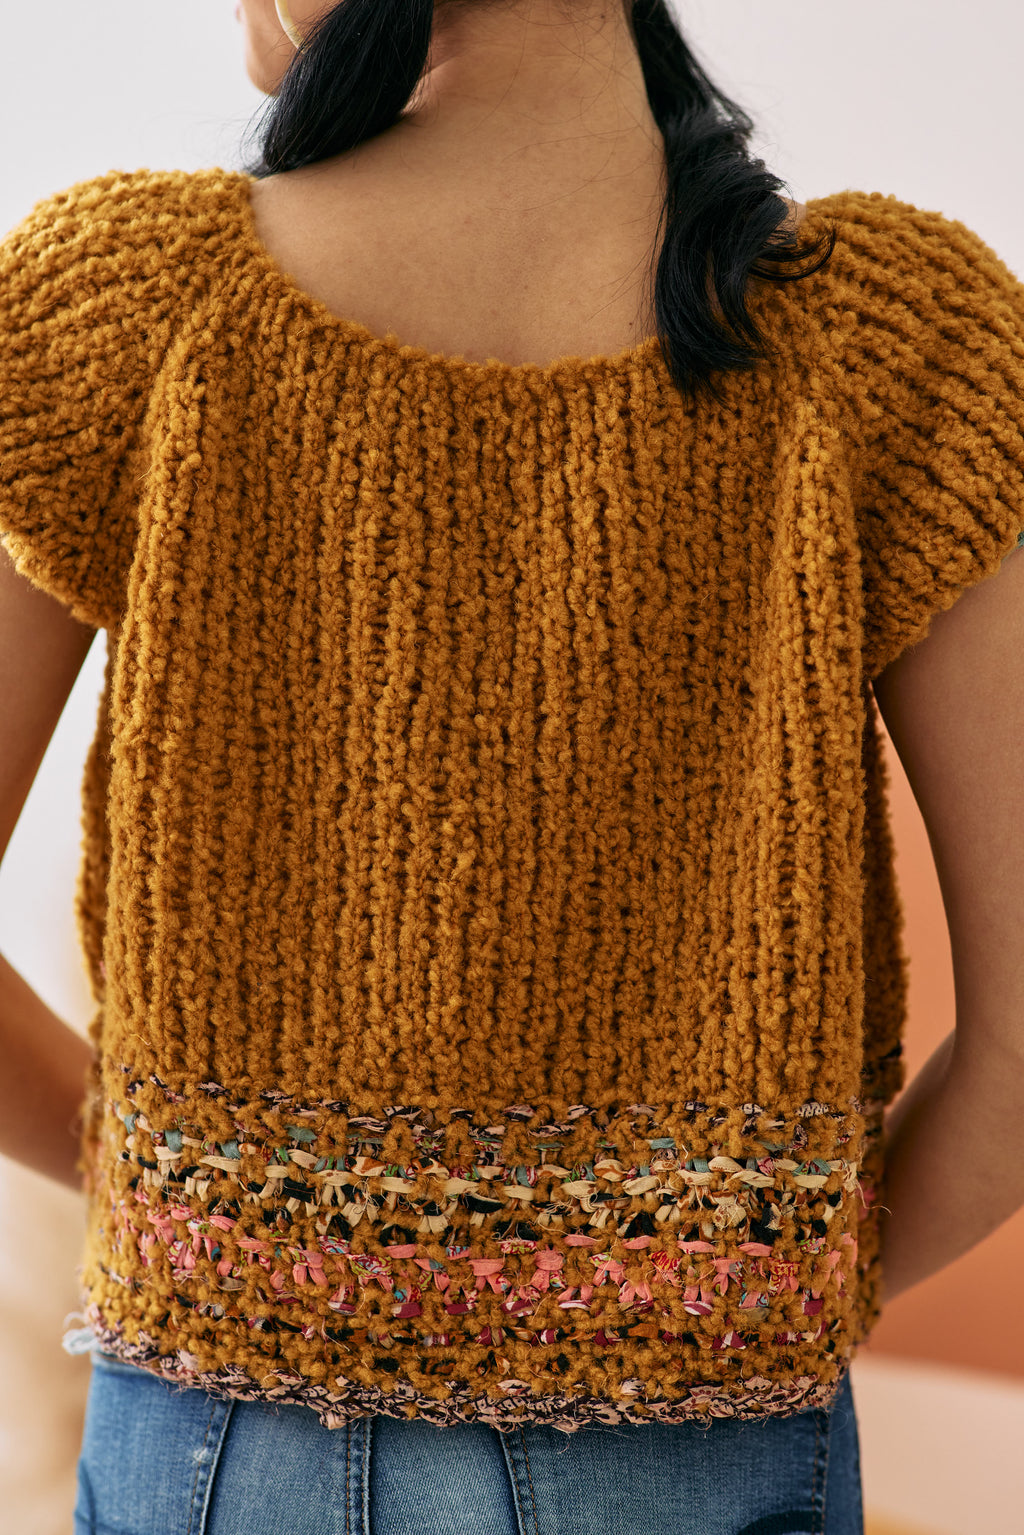 Gumdrop Sweater Pattern